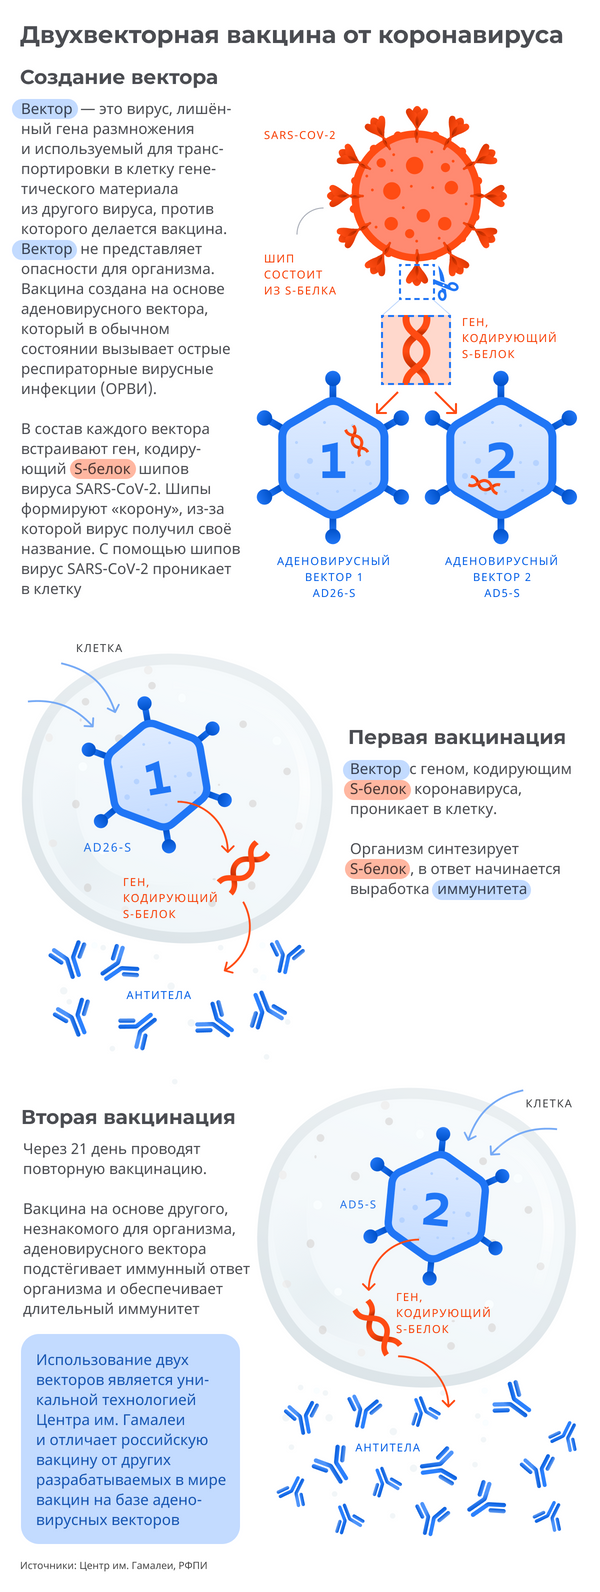 Российская вакцина от коронавируса: как работает препарат - Sputnik Азербайджан